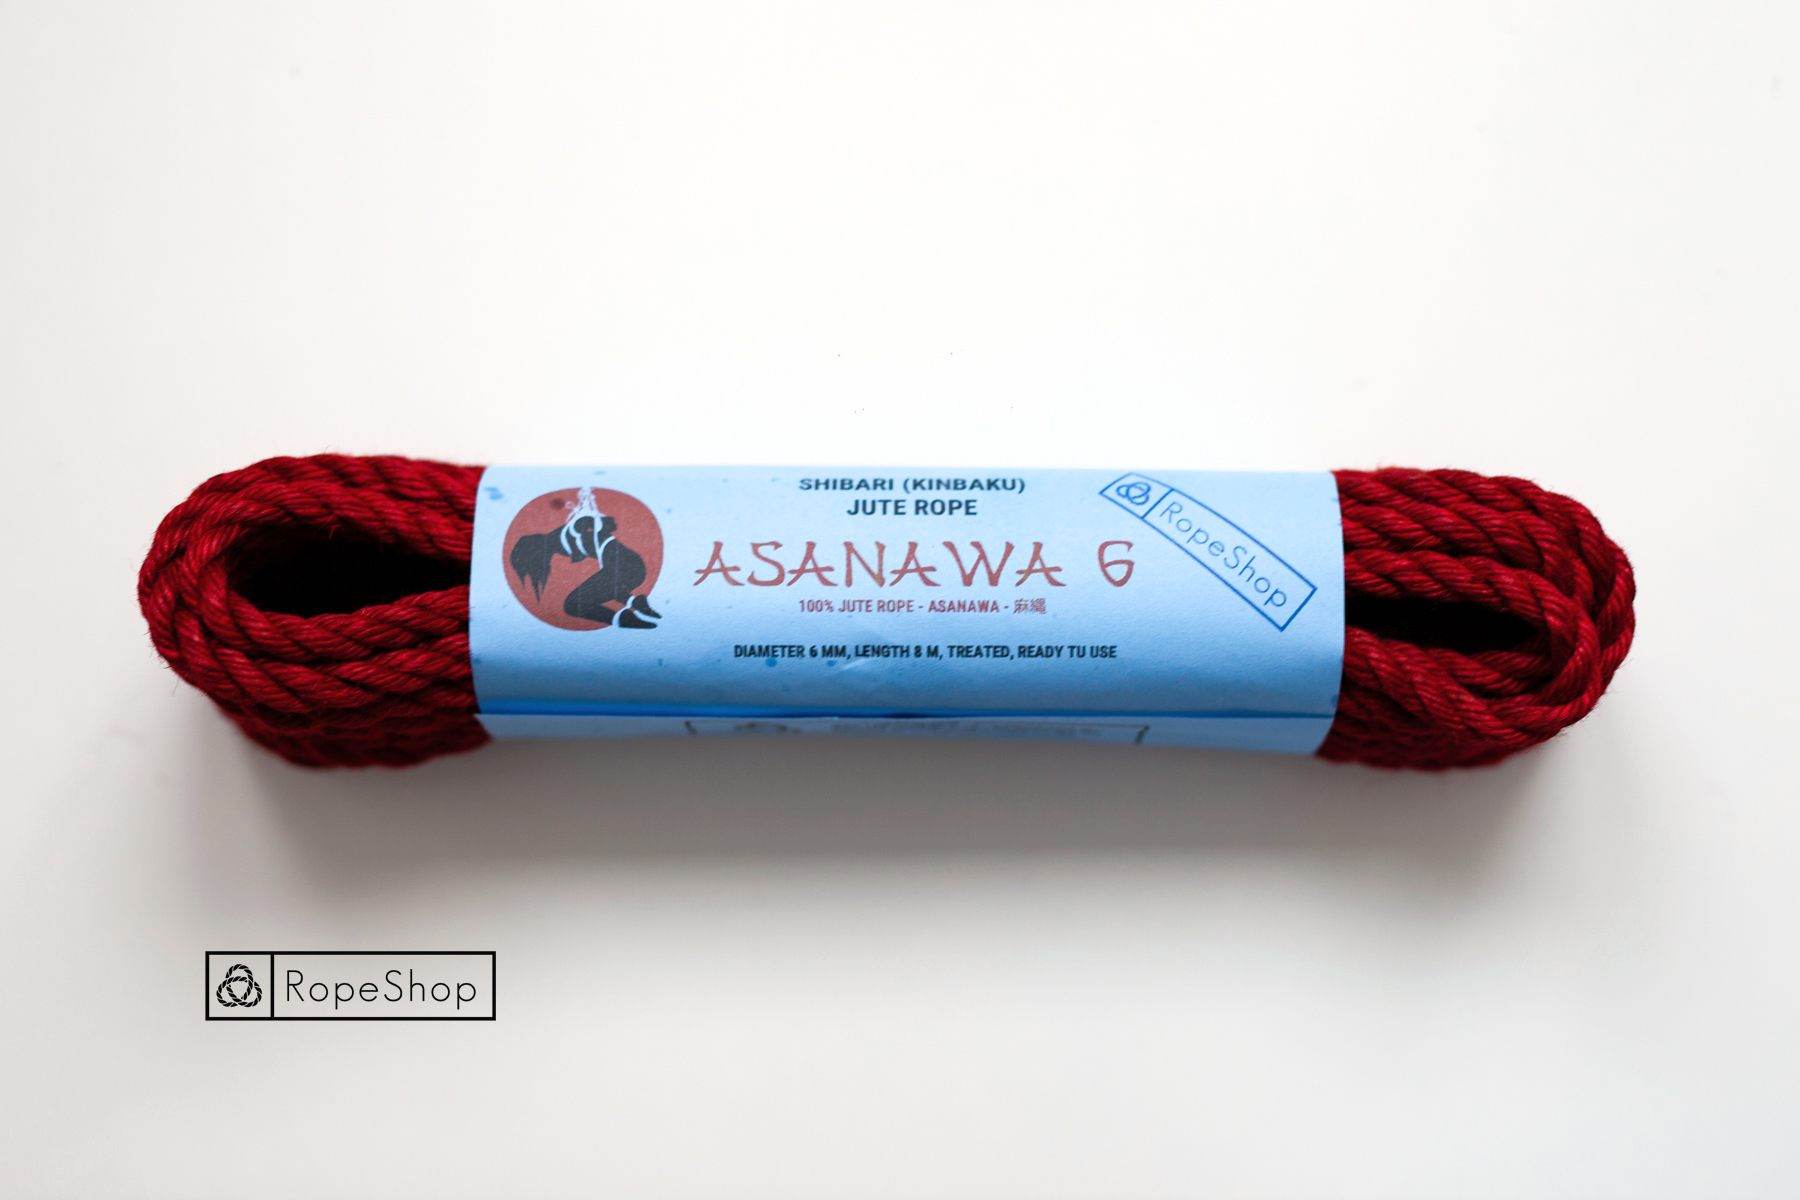 Веревка для шибари 6 мм. джутовая Asanawa 6 (Japan) обработанная, красная